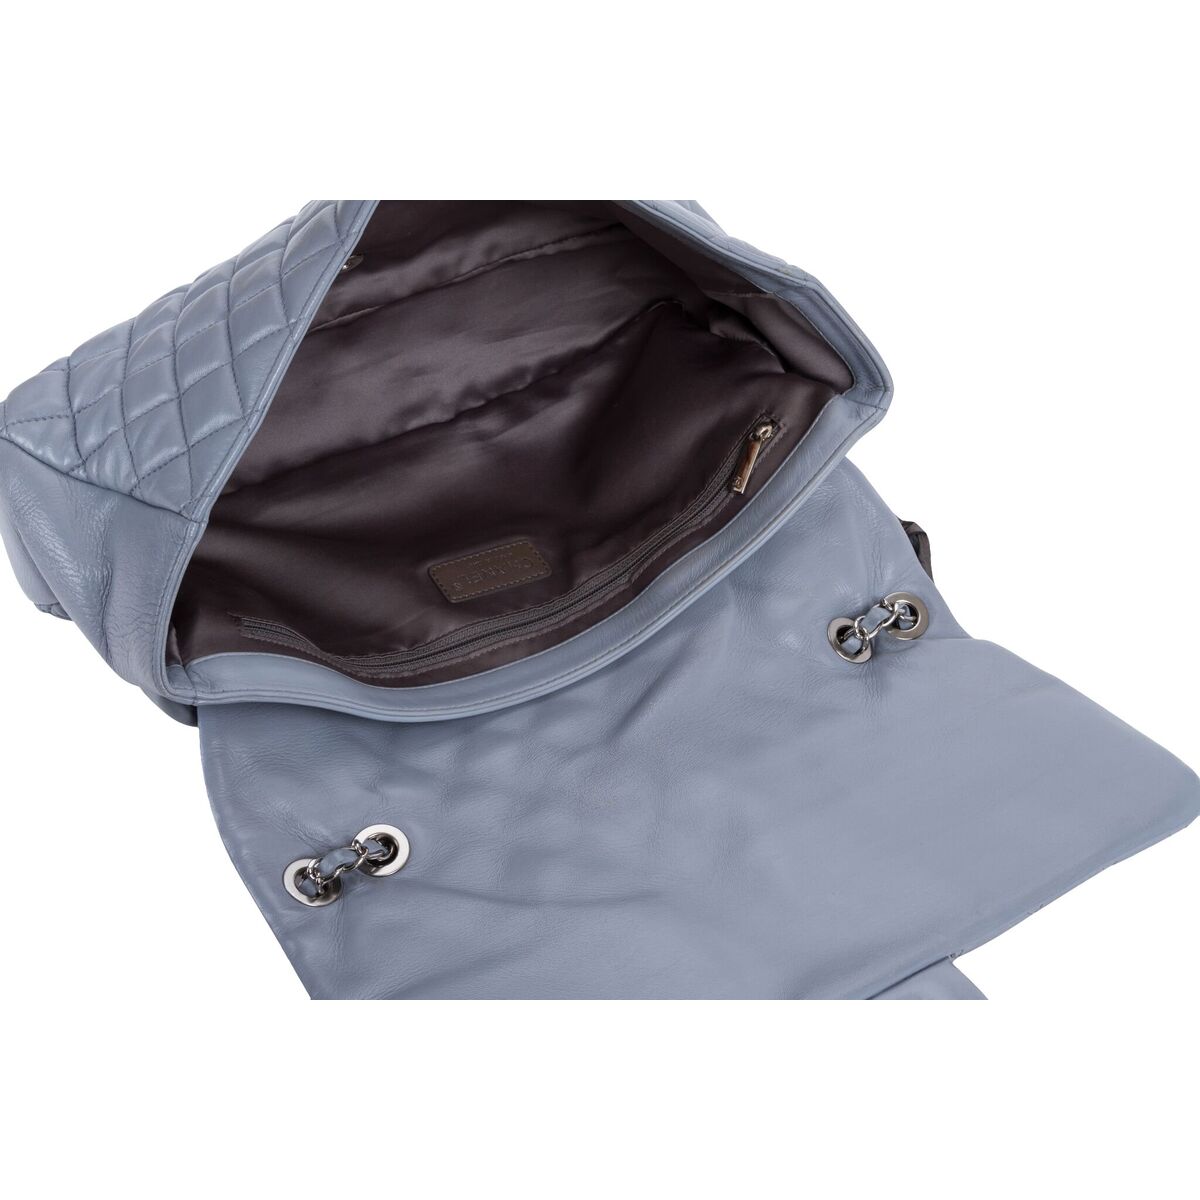 handbag raincoat chanel｜TikTok Search